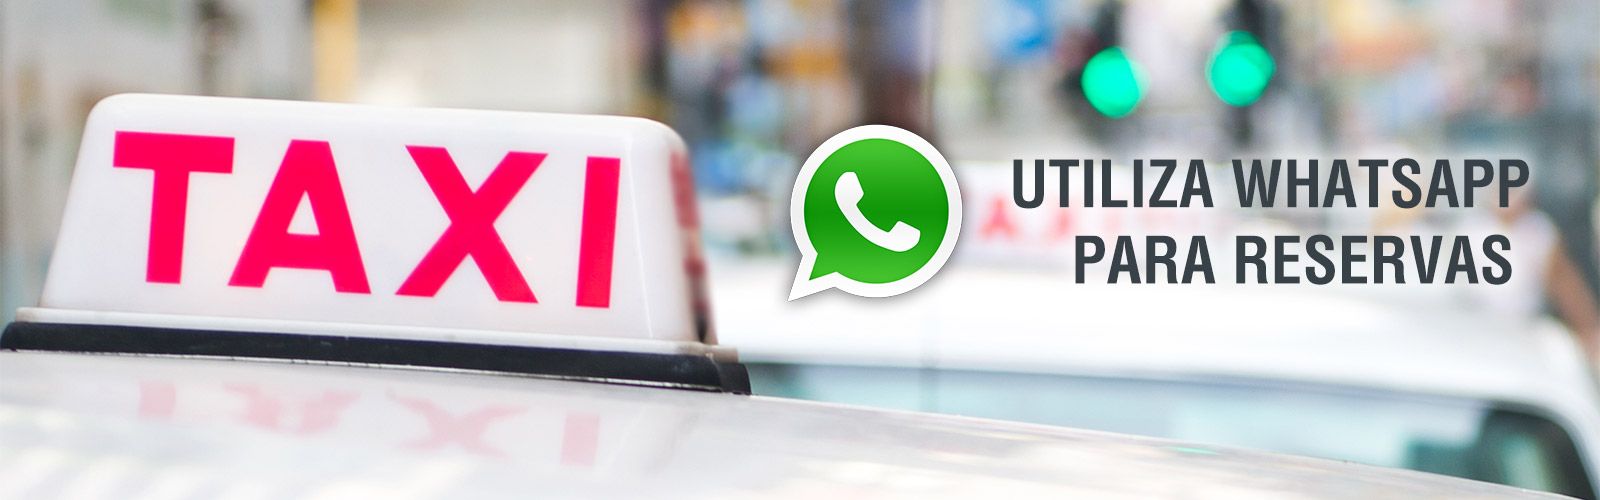 Taxis Torre del Mar destacado de WhatsApp